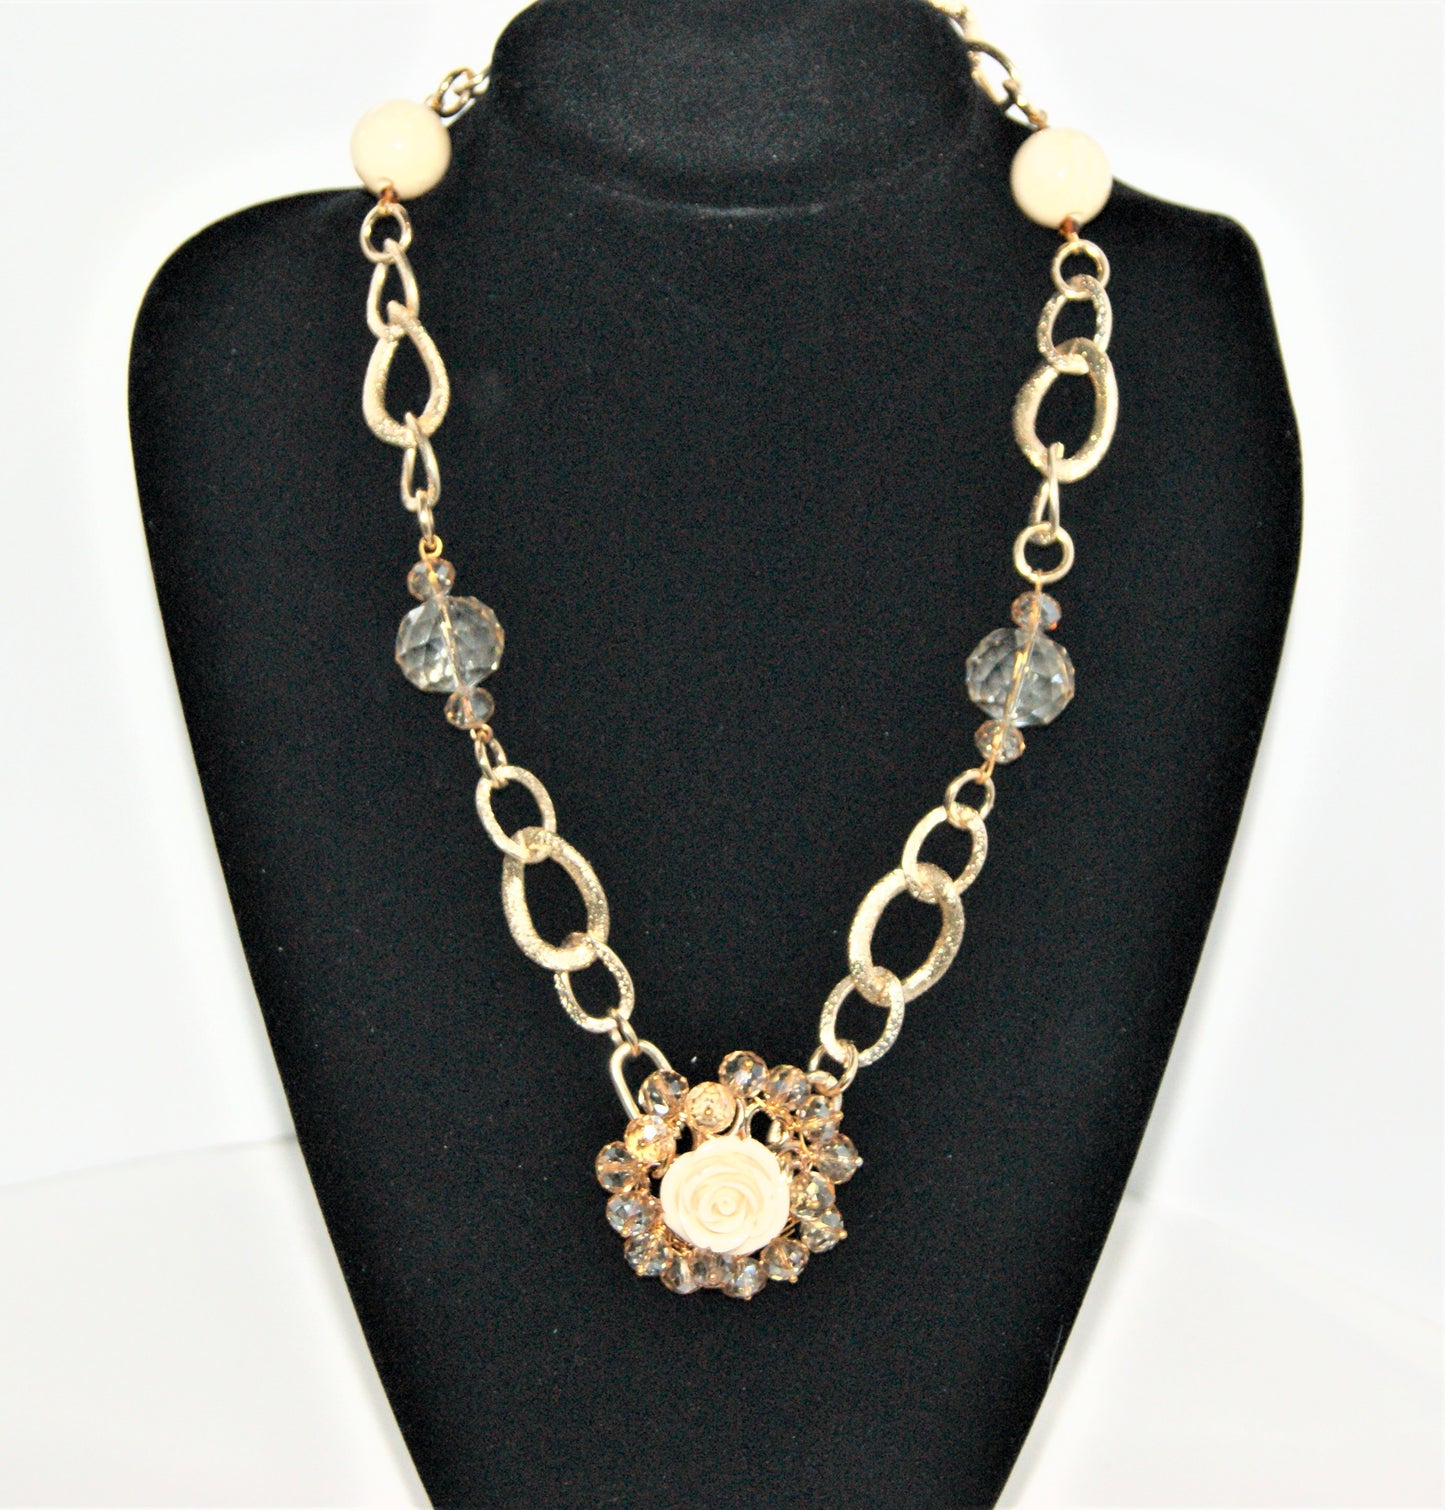 Collana LE ROSE .002 catena dorata, cristalli, perle, ciondolo cristalli e rosa avorio.